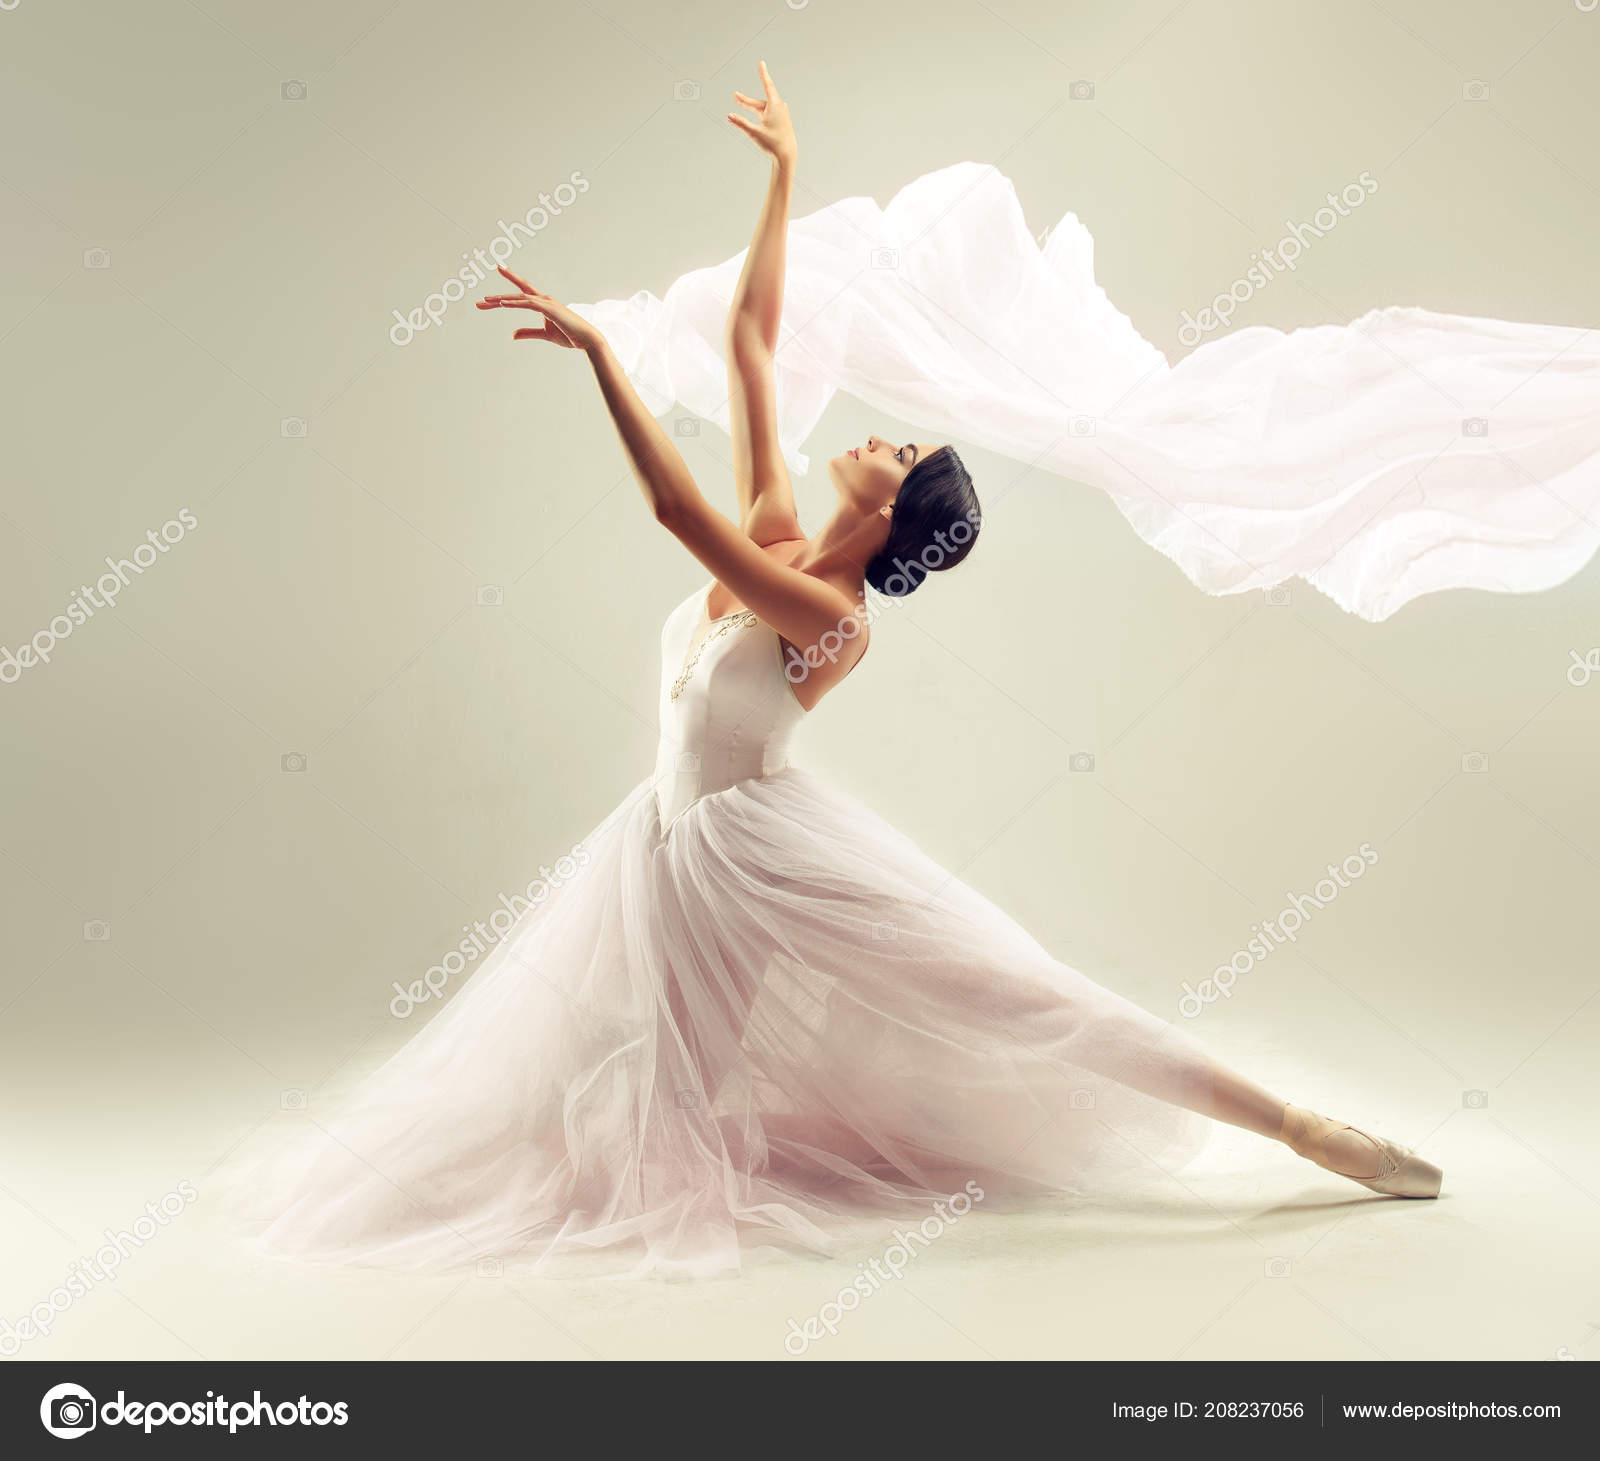 Bailarina de ballet profesional